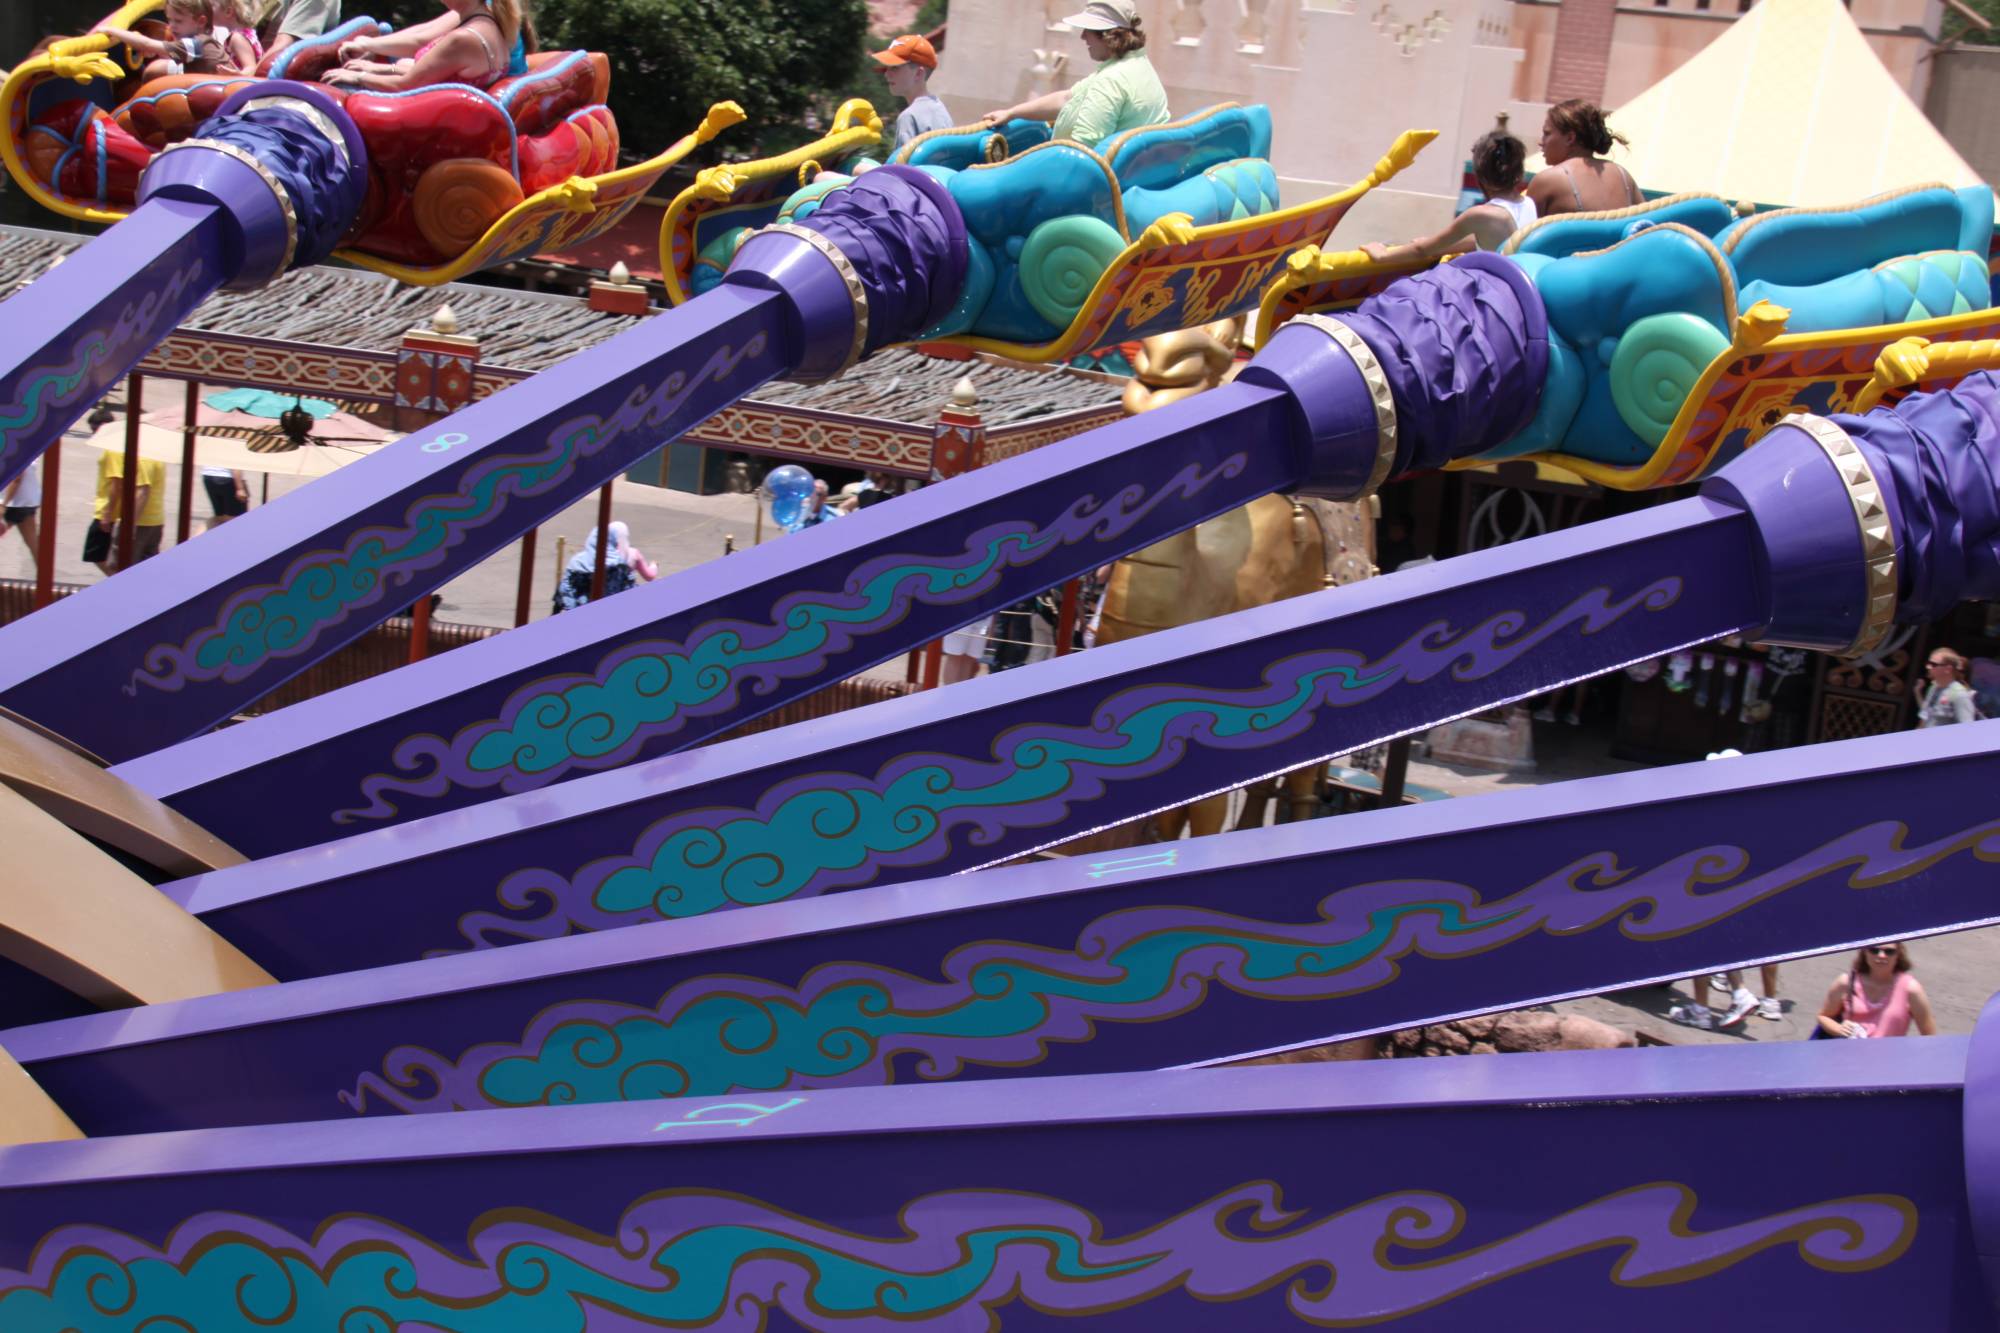 Magic Kingdom - Aladdin's Magic Carpets